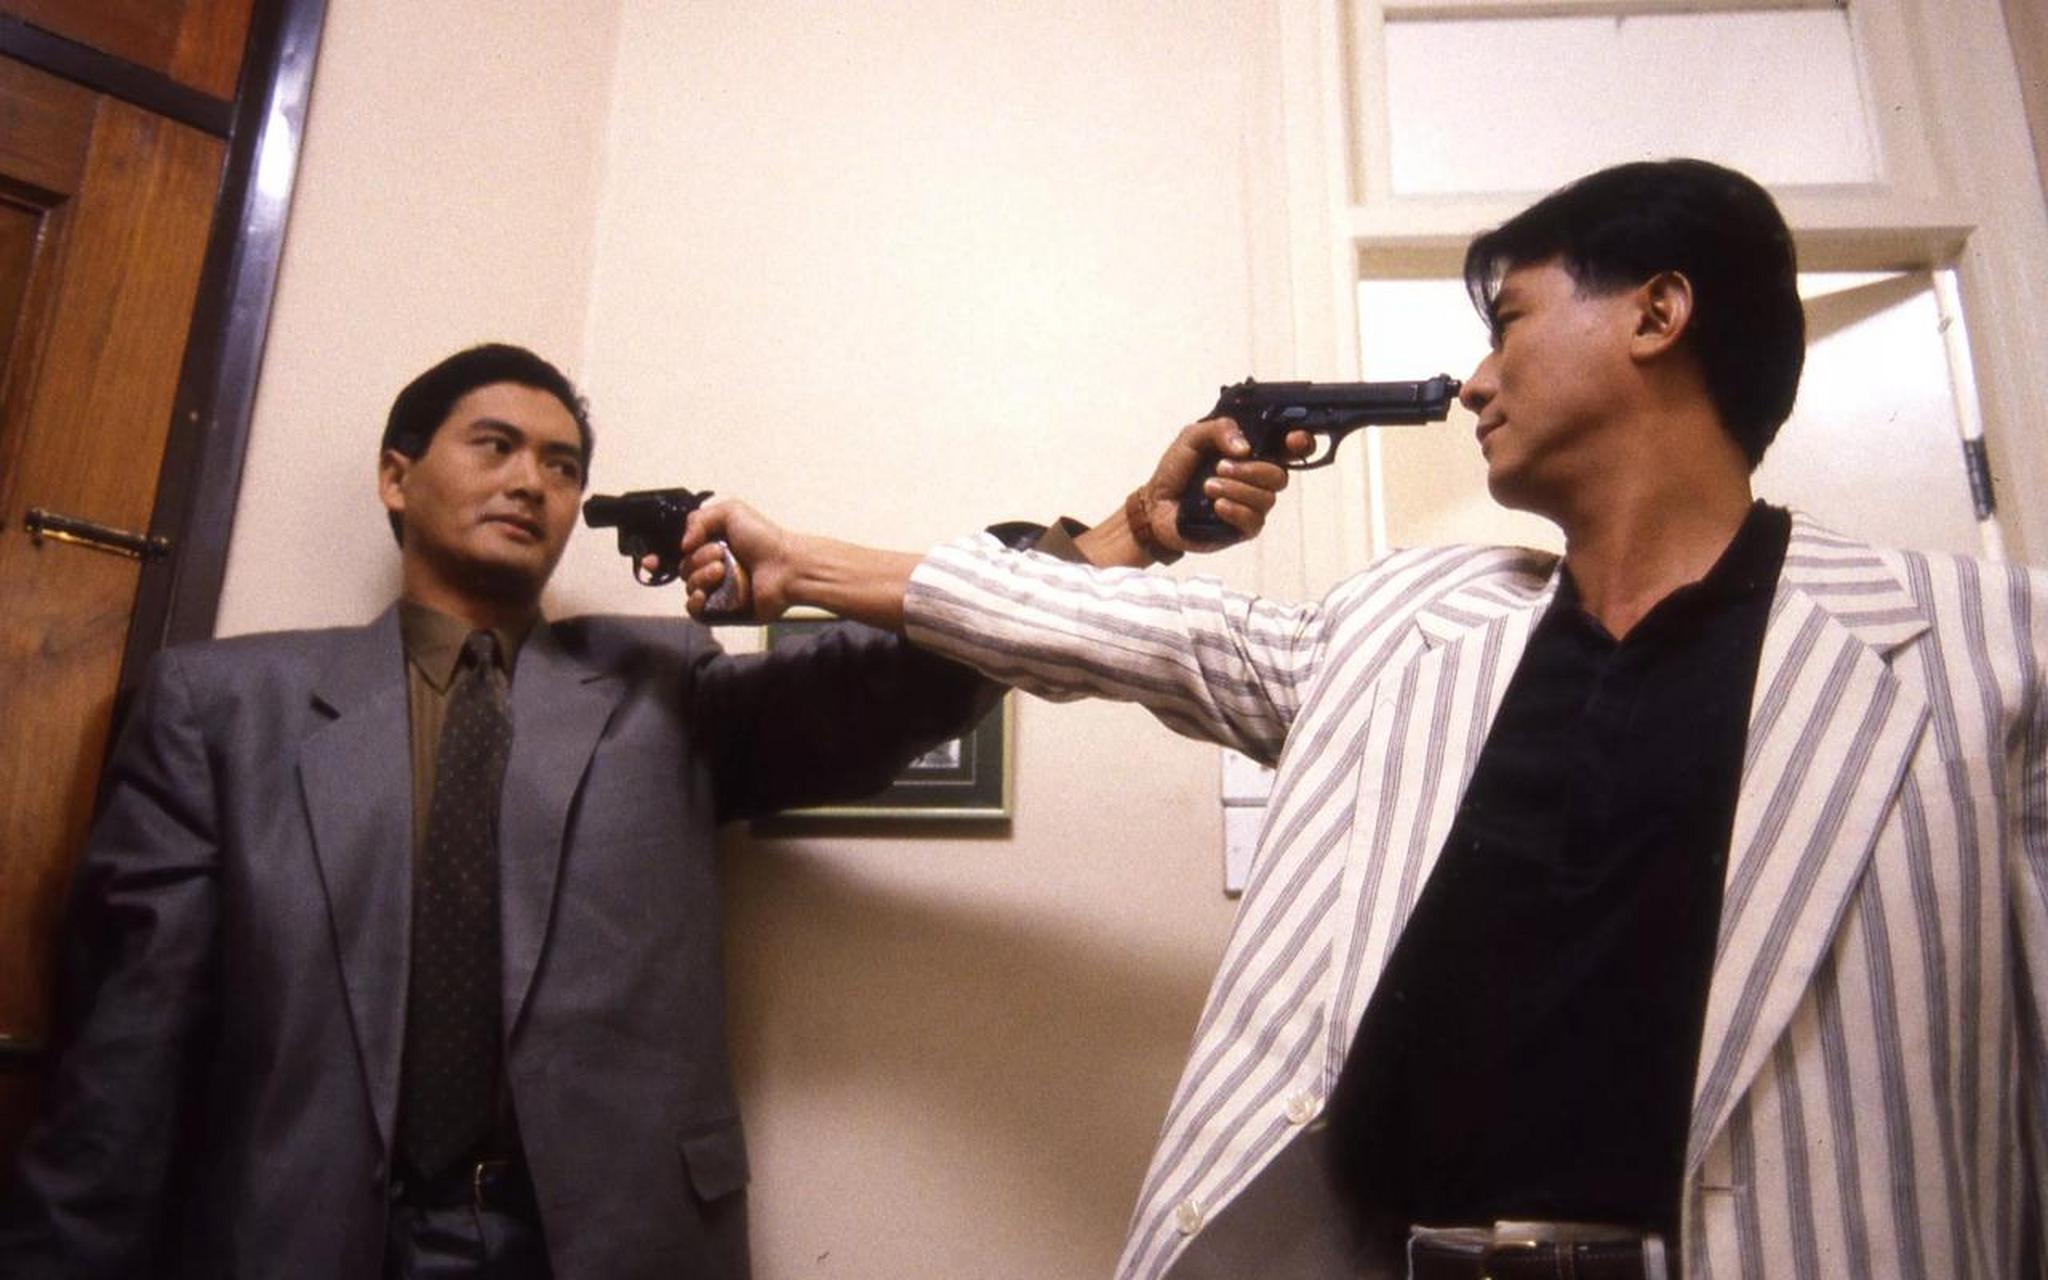 1989年有一部港片叫《喋血双雄》,周润发和李修贤主演,现在已成经典